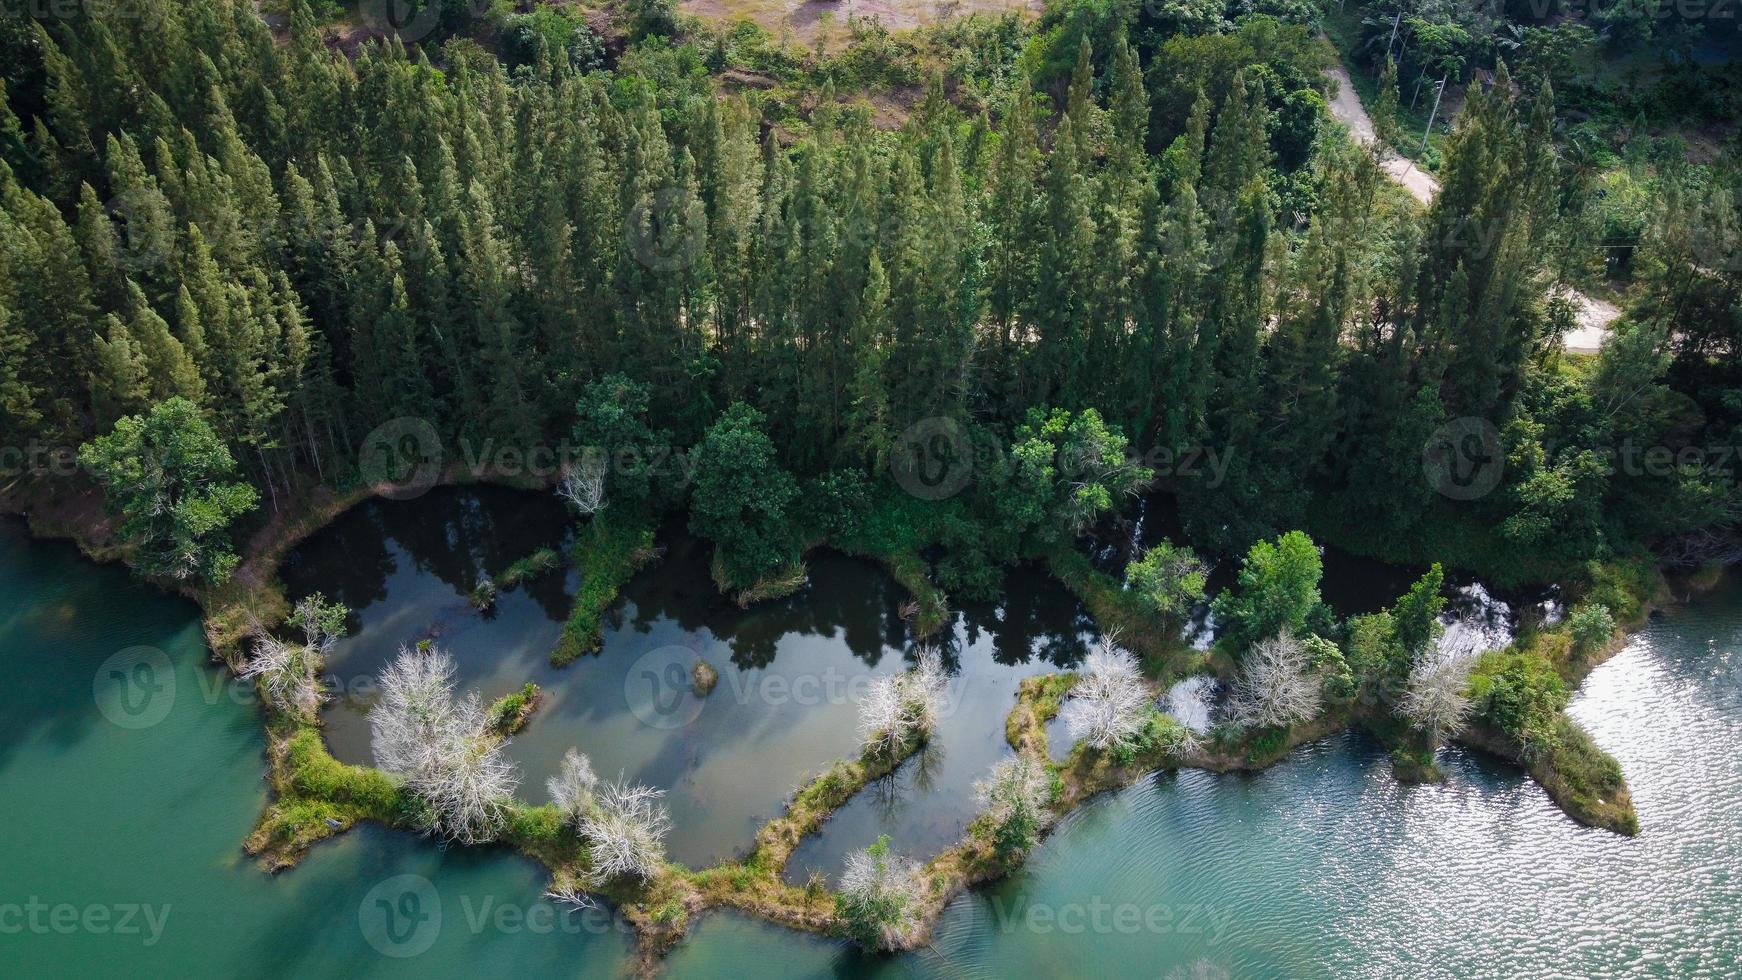 Vista aérea del lago y el bosque de pinos en el parque público liwong, chana, tailandia foto